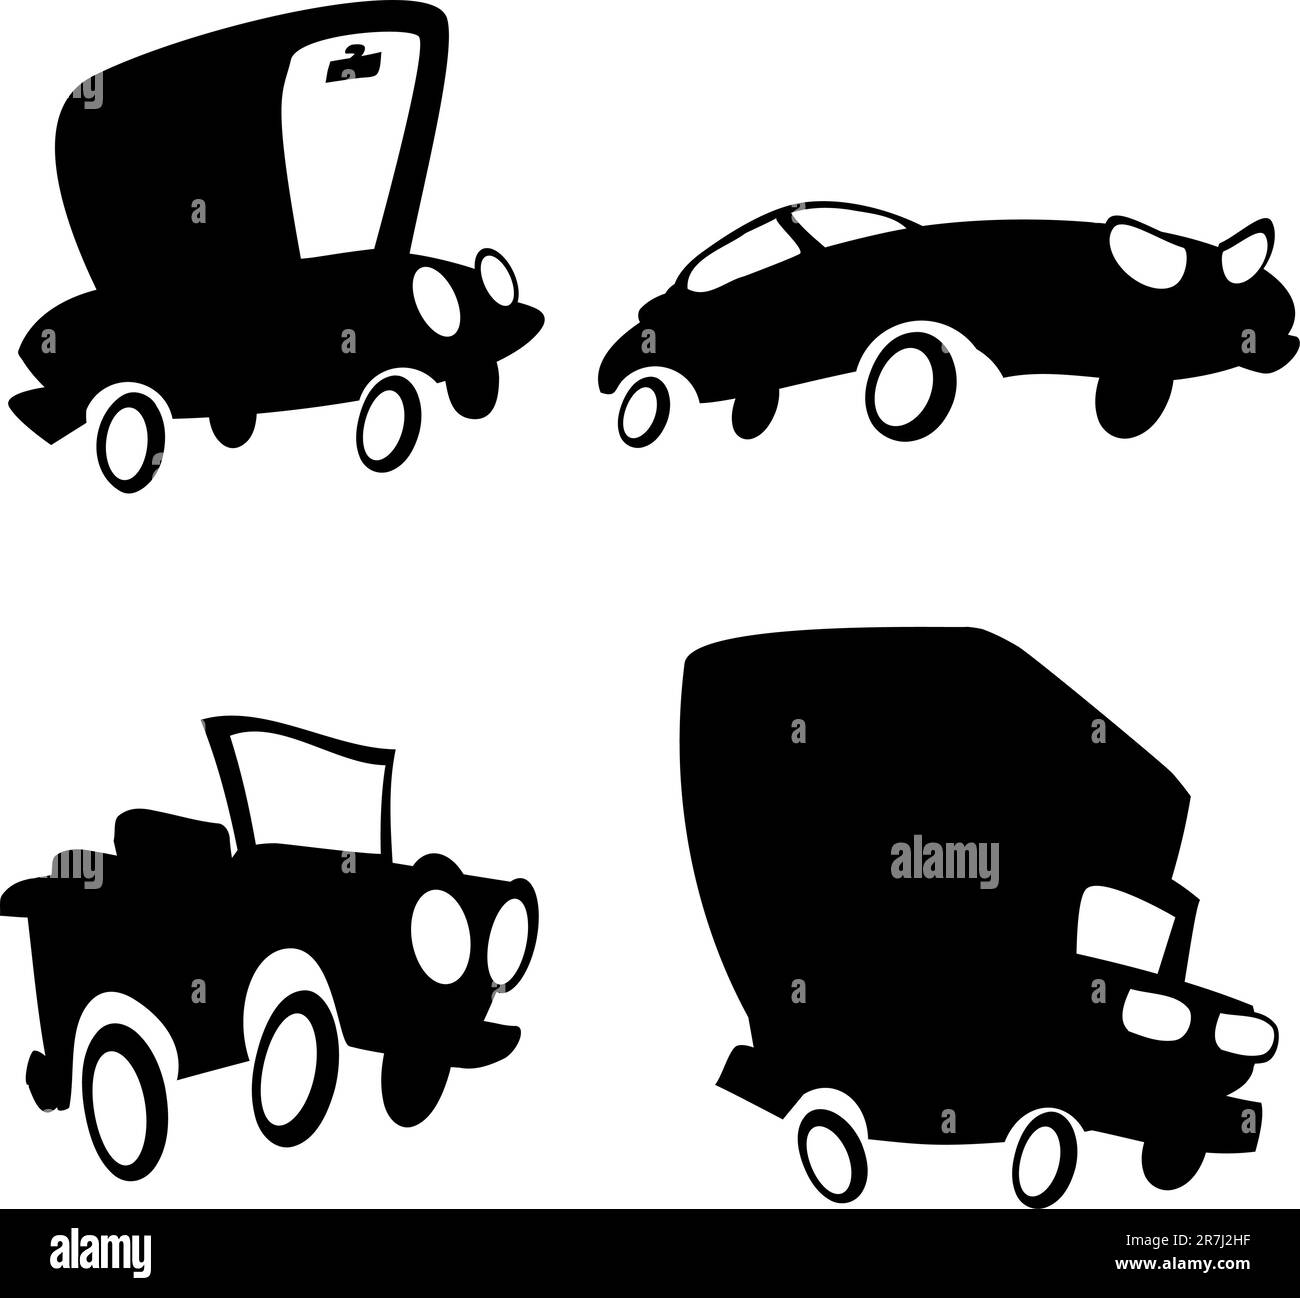 Ensemble de voitures de dessin animé en silhouette. Un camion, une jeep, une berline et une voiture de sport Illustration de Vecteur